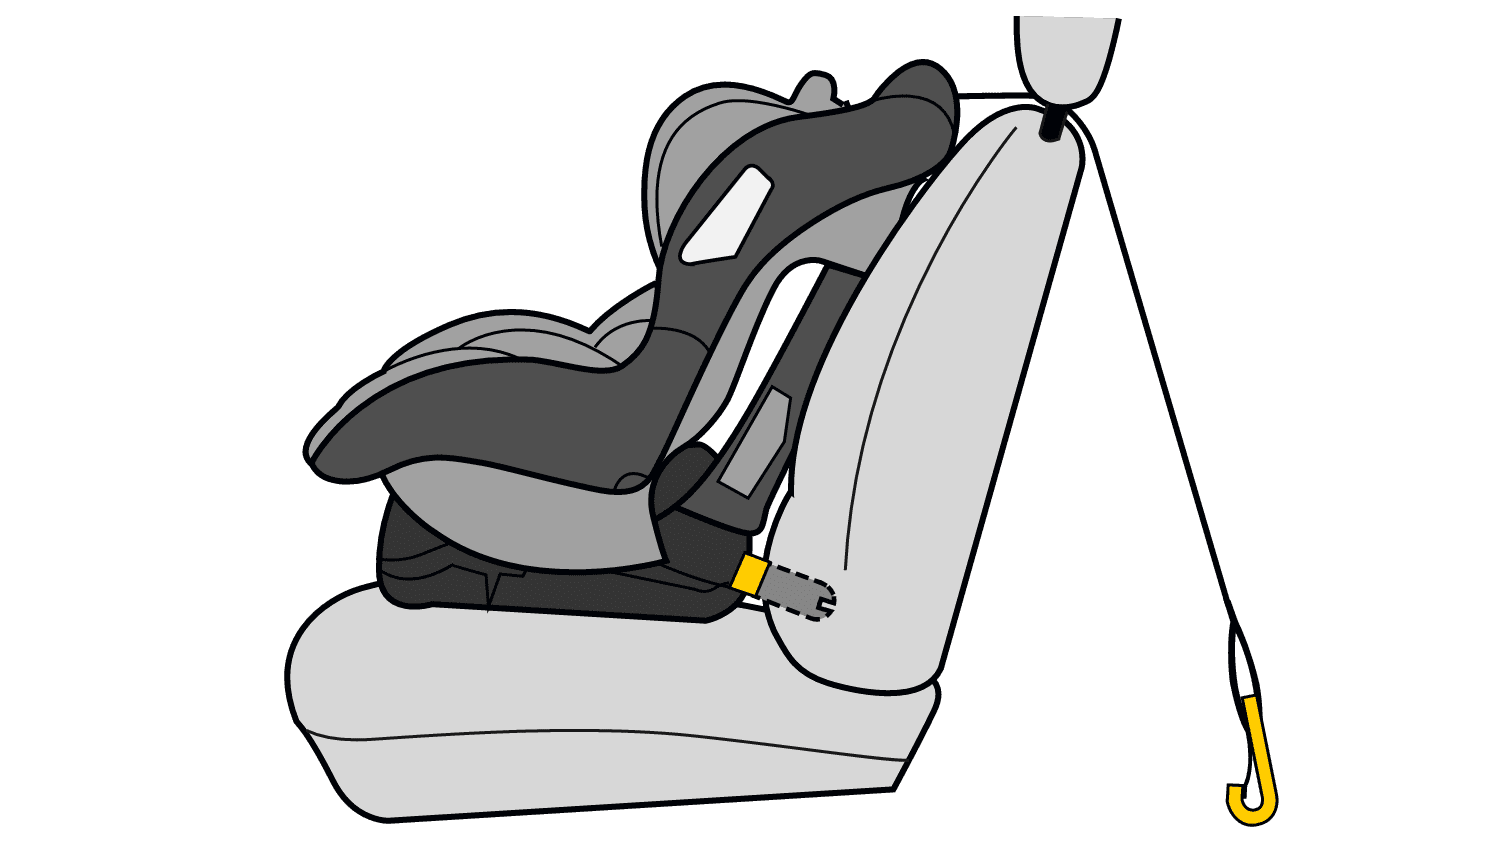 Kindersitze mit Isofix: Alle Infos mit praktischen Tipps zum Einbau